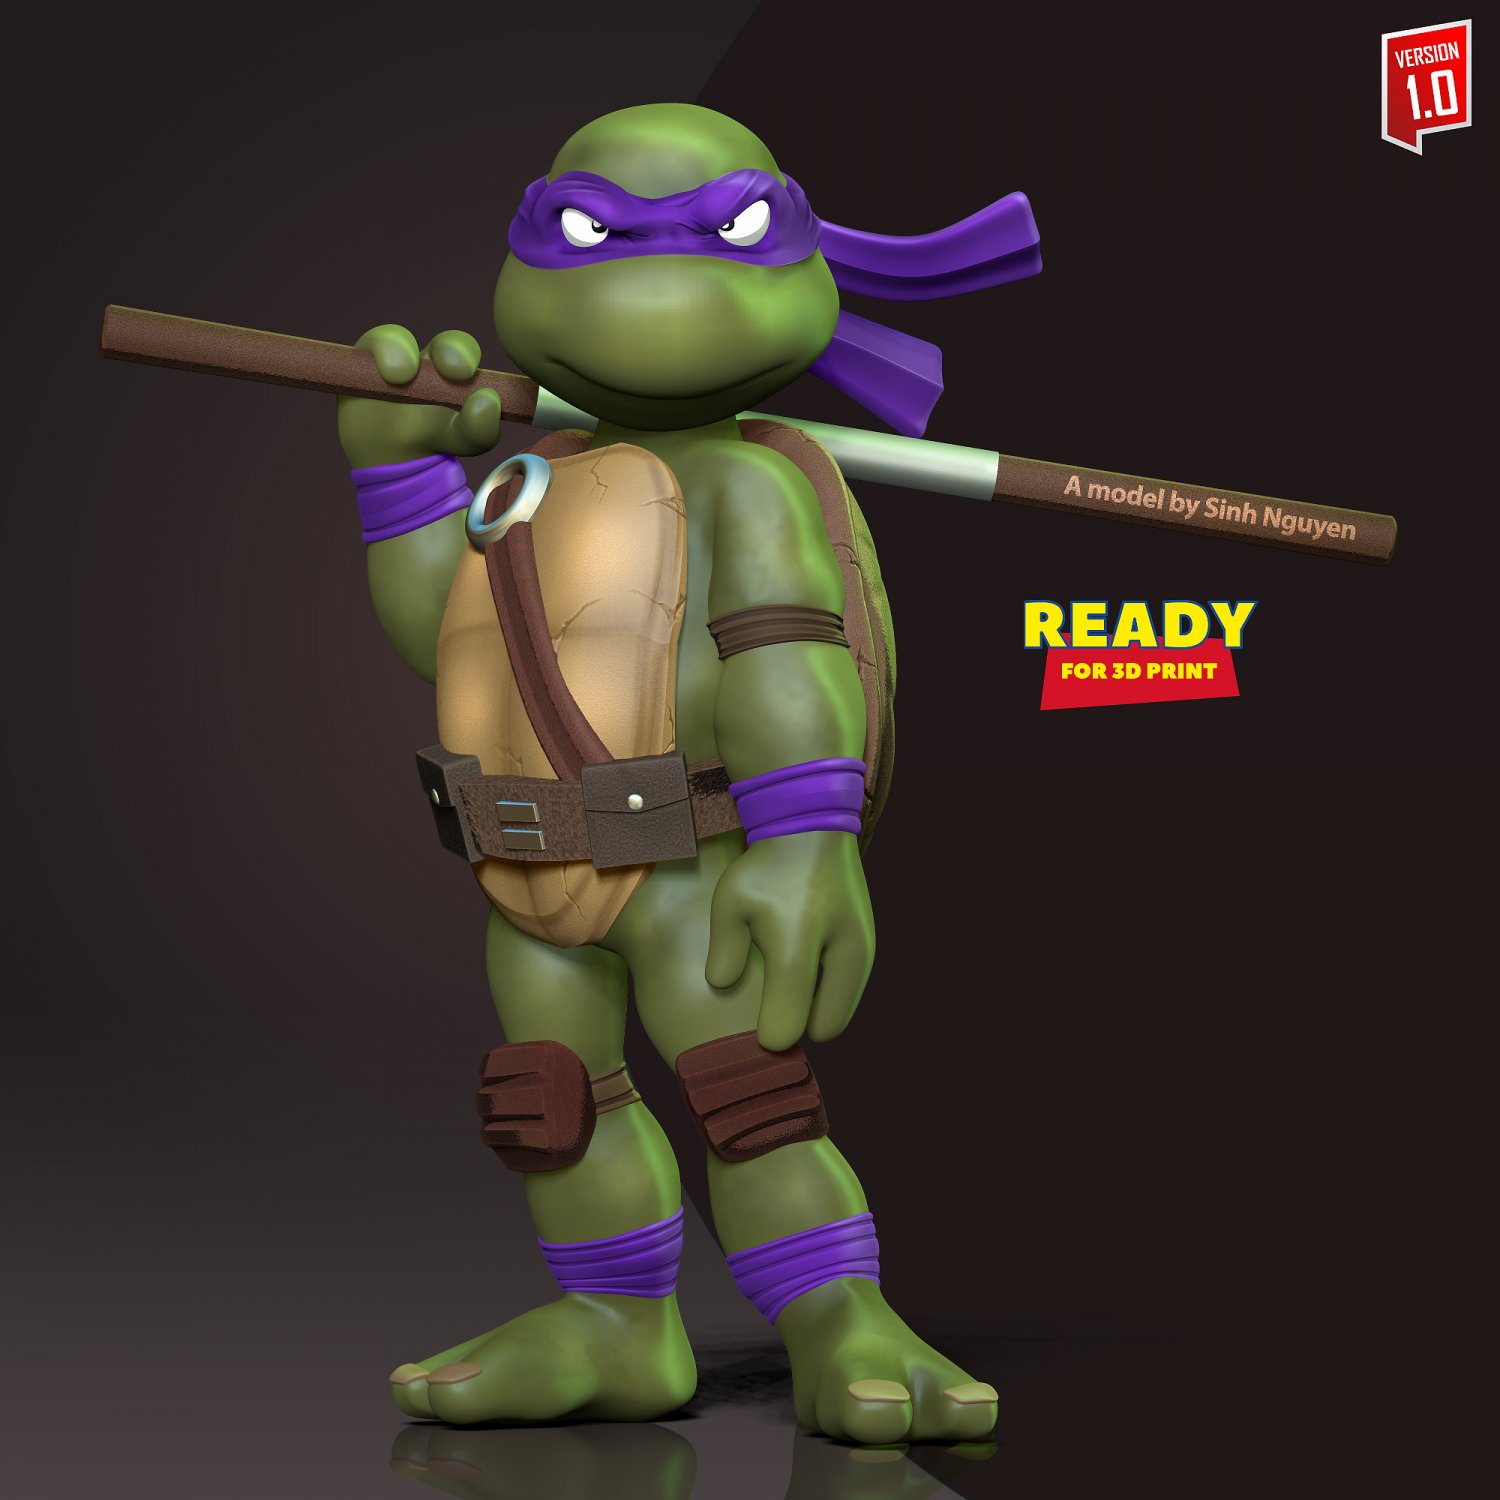 Donatello  Teenage mutant ninja turtles decorations, Teenage mutant ninja  turtles bedroom, Donatello ninja turtle